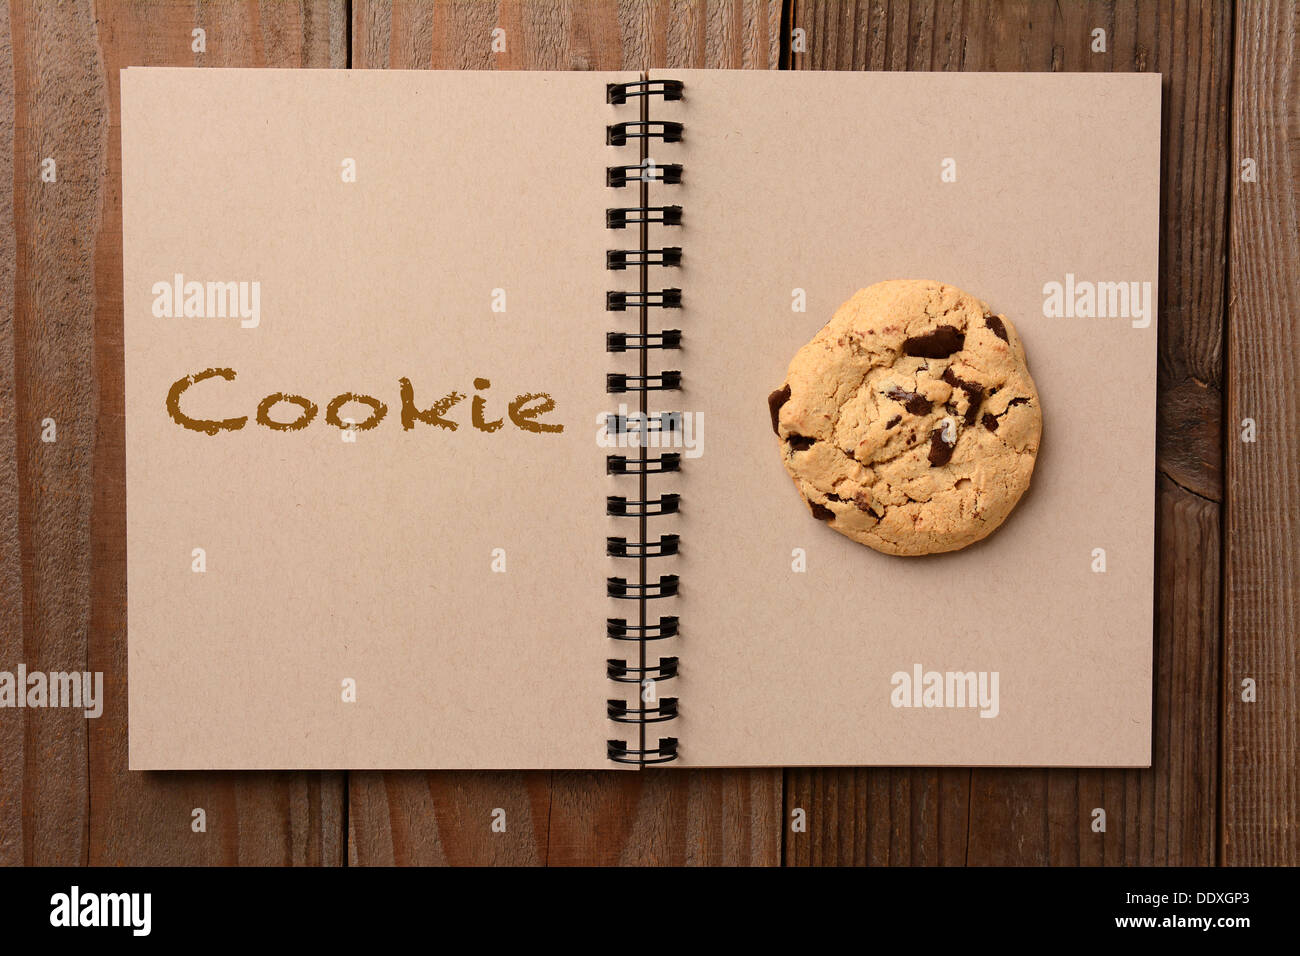 Un grand biscuit aux brisures de chocolat sur la page vierge d'un ordinateur portable. La page opposée a le mot Cookie précisées. Banque D'Images